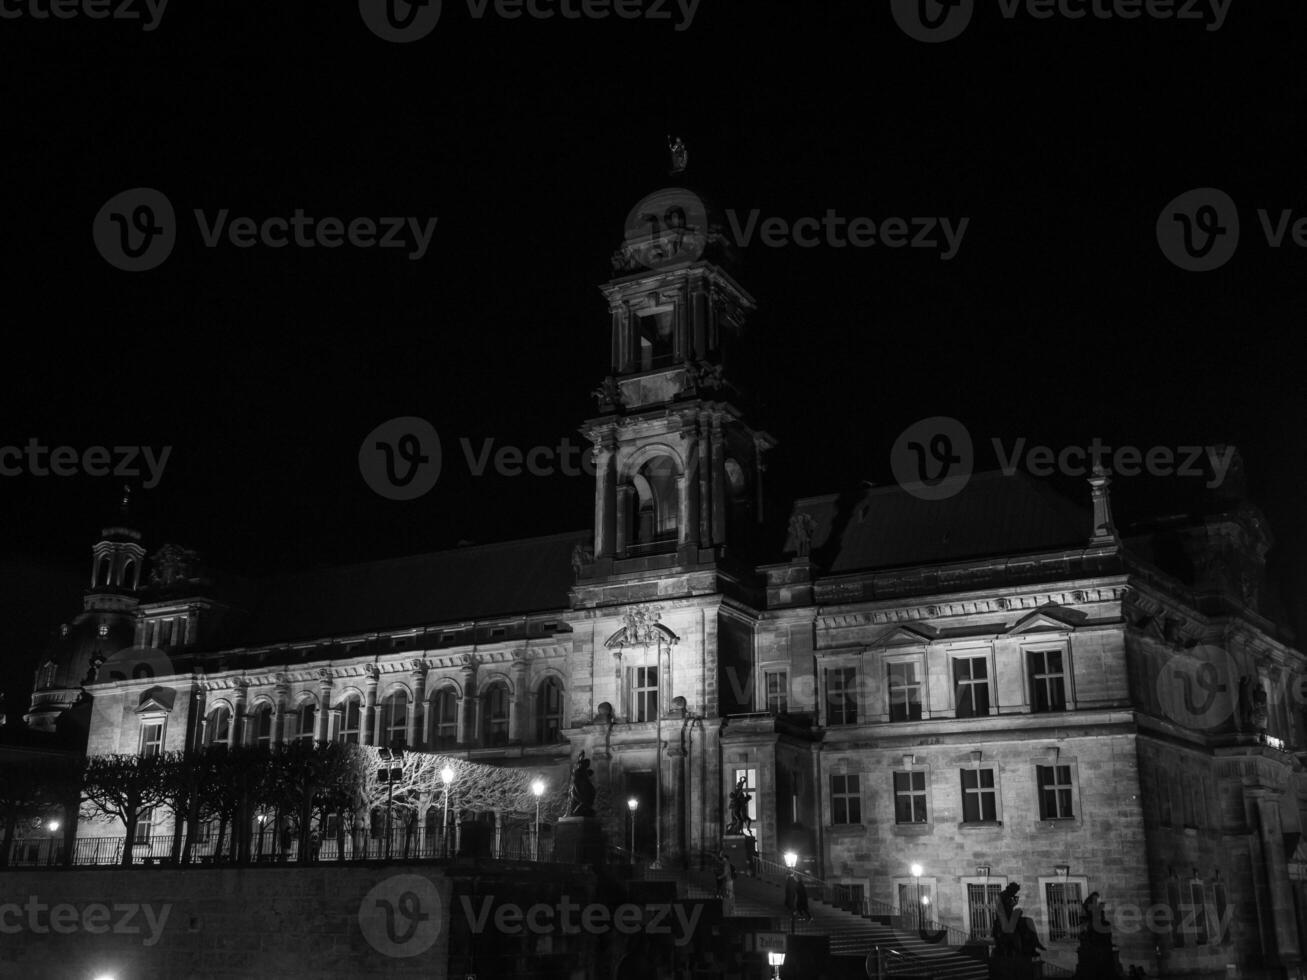 el ciudad de Dresde a noche foto